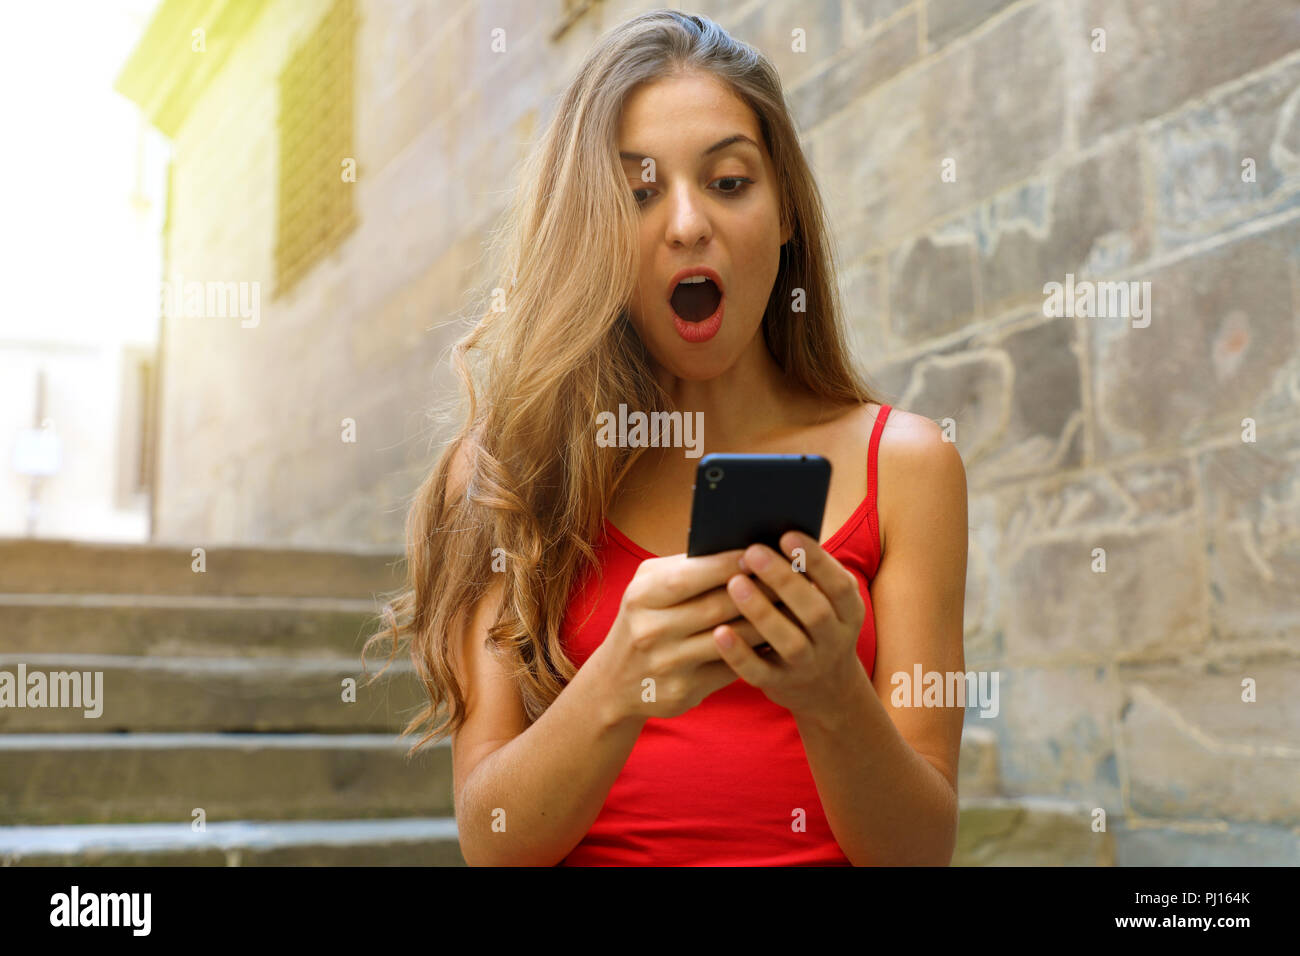 Euphorische junge Frau smart phone aufpaßt, während zu Fuß auf der Straße mit Flair. Überrascht Mädchen mit Smart Phone im Freien. Stockfoto